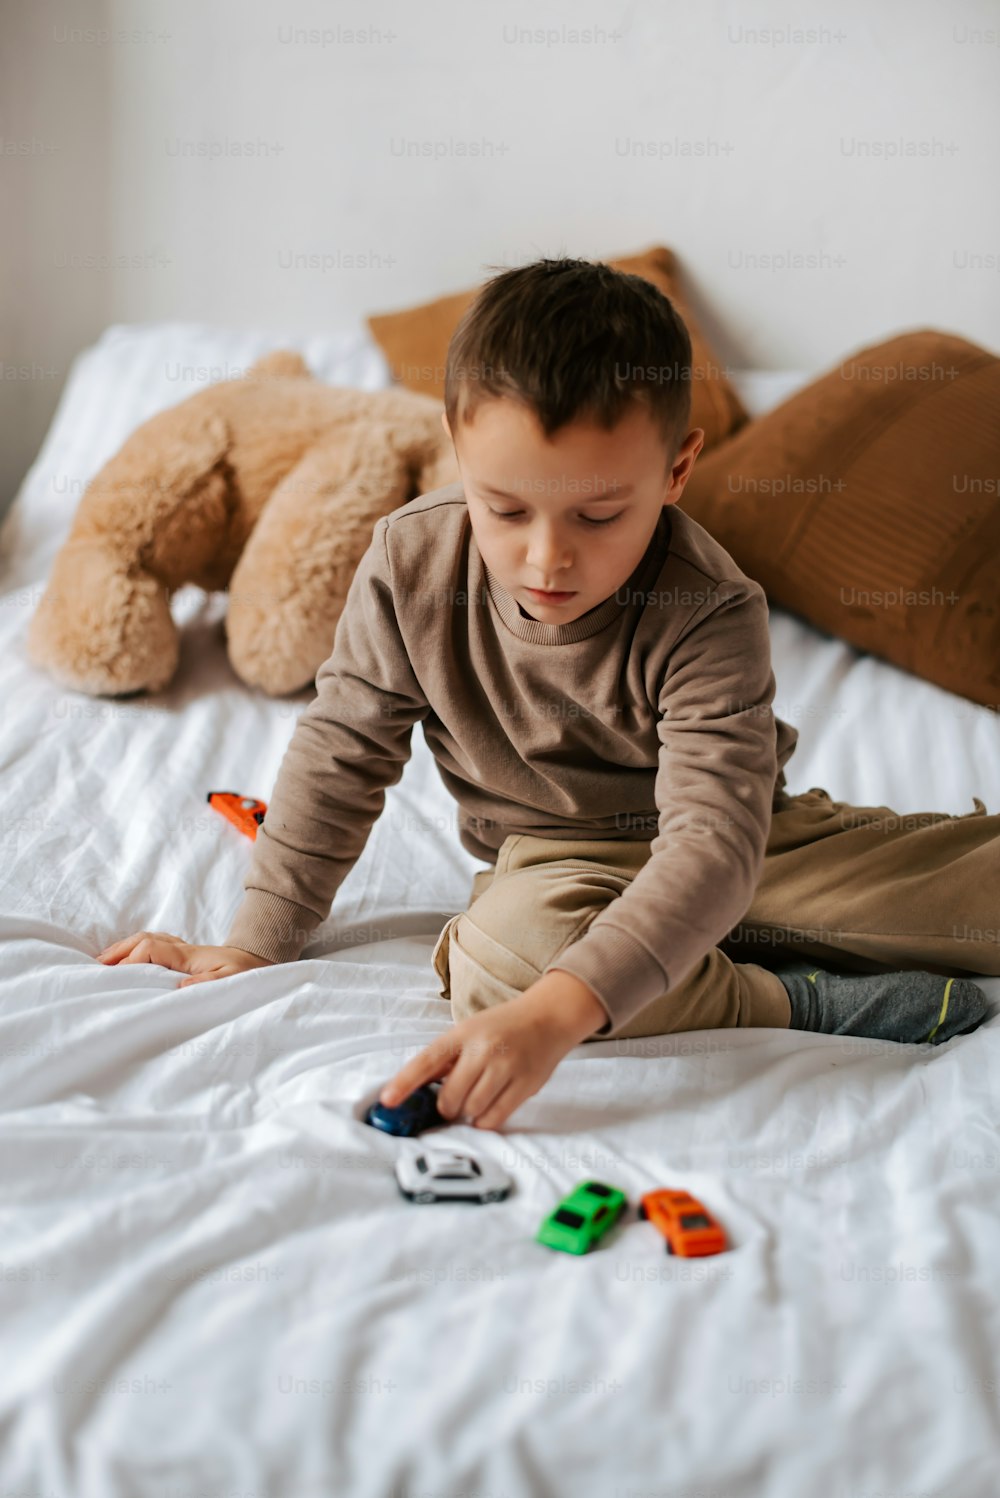 Ein kleiner Junge sitzt auf einem Bett und spielt mit Spielzeug